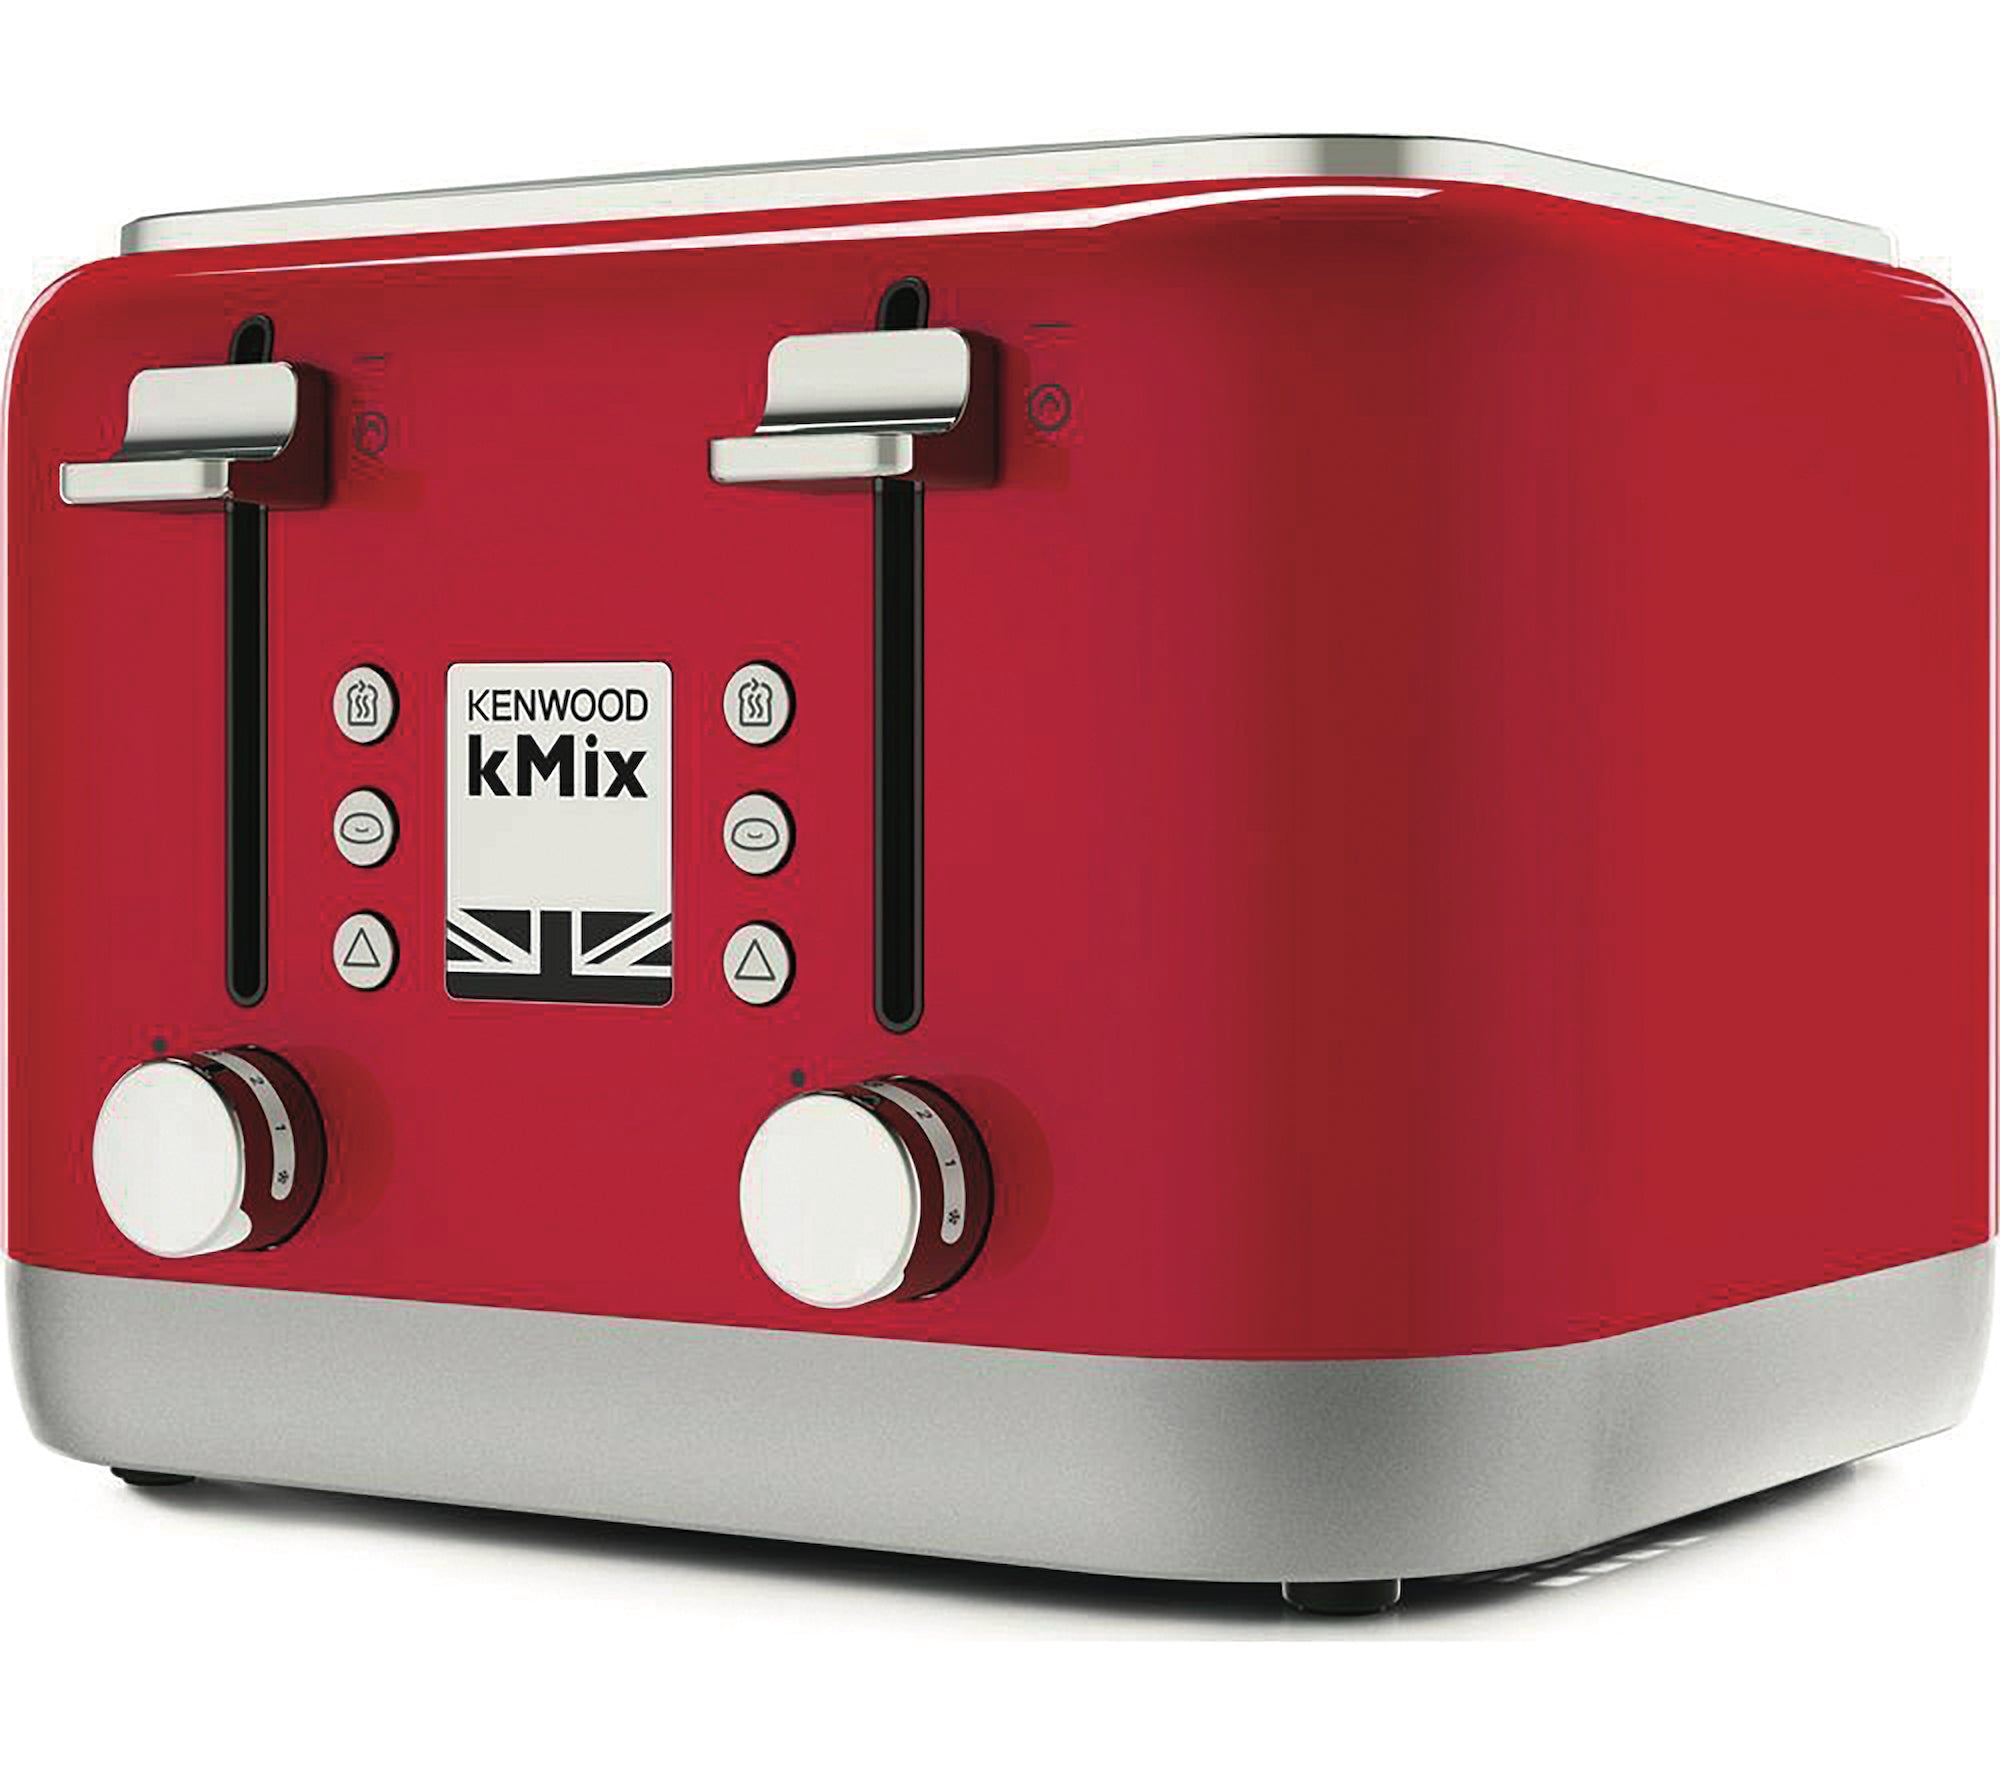 Kenwood KMix 4-slot Toaster